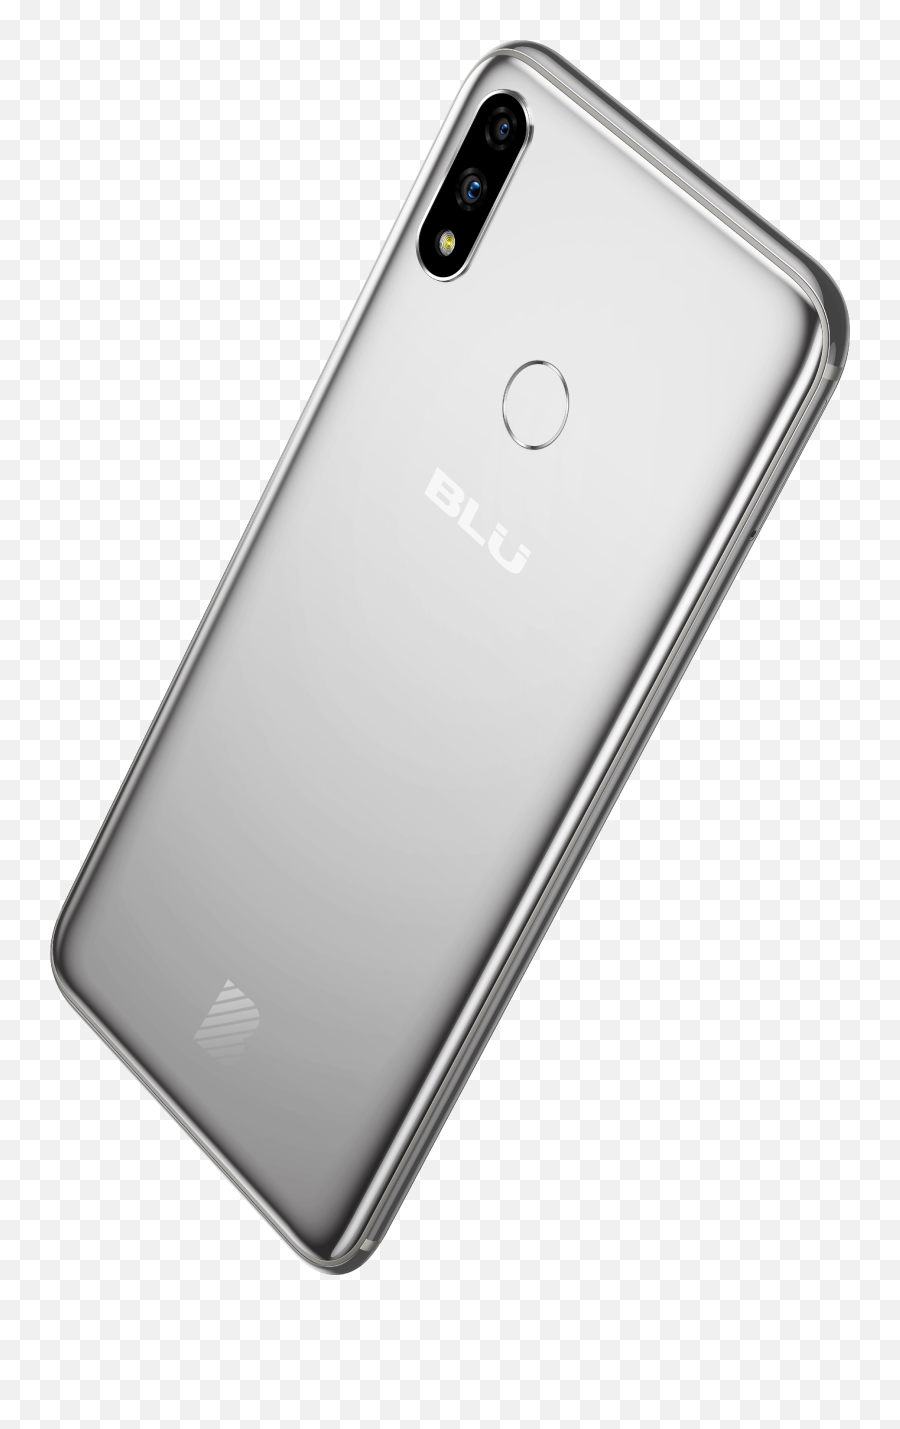 Blu Vivo V11 Plus Xi Plus Smartphone Emoji,Blu Vivo Air Emojis?